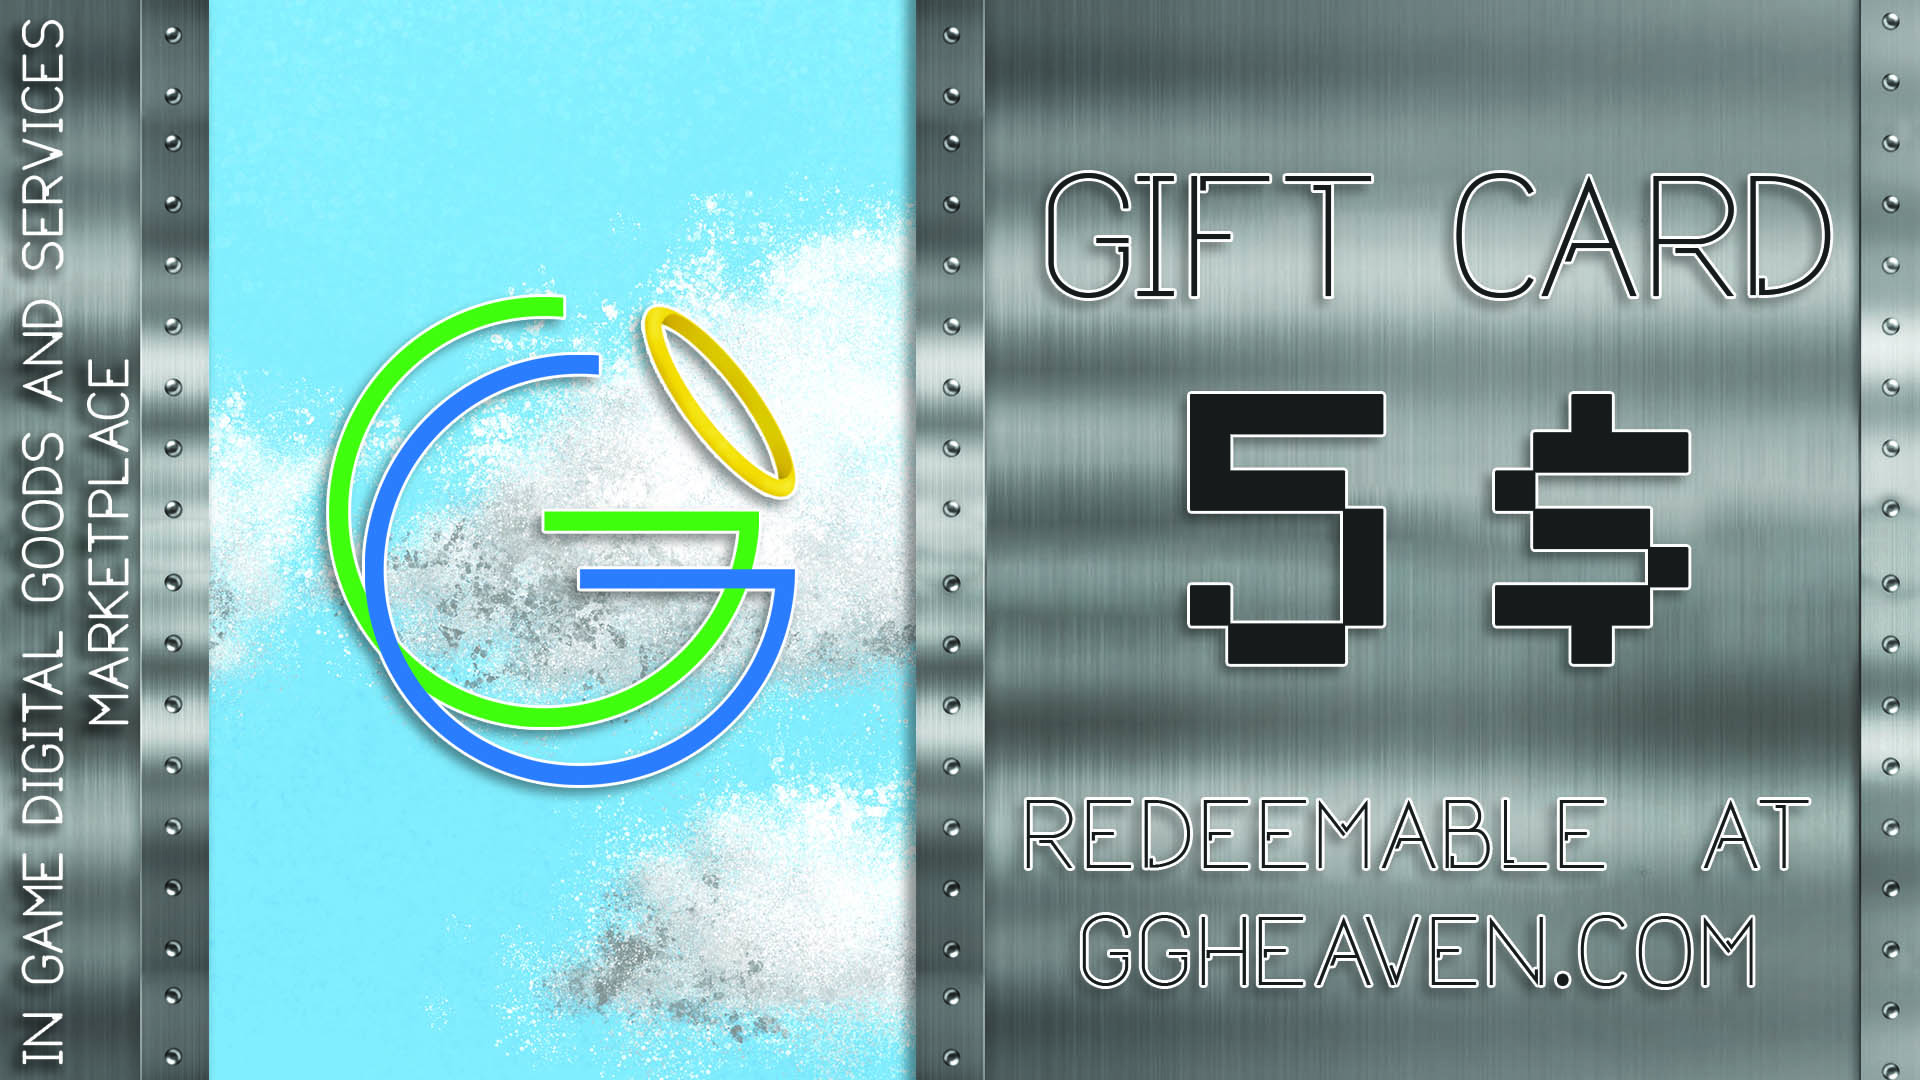 GGHeaven.com 5$ Gift Card (6.27$)